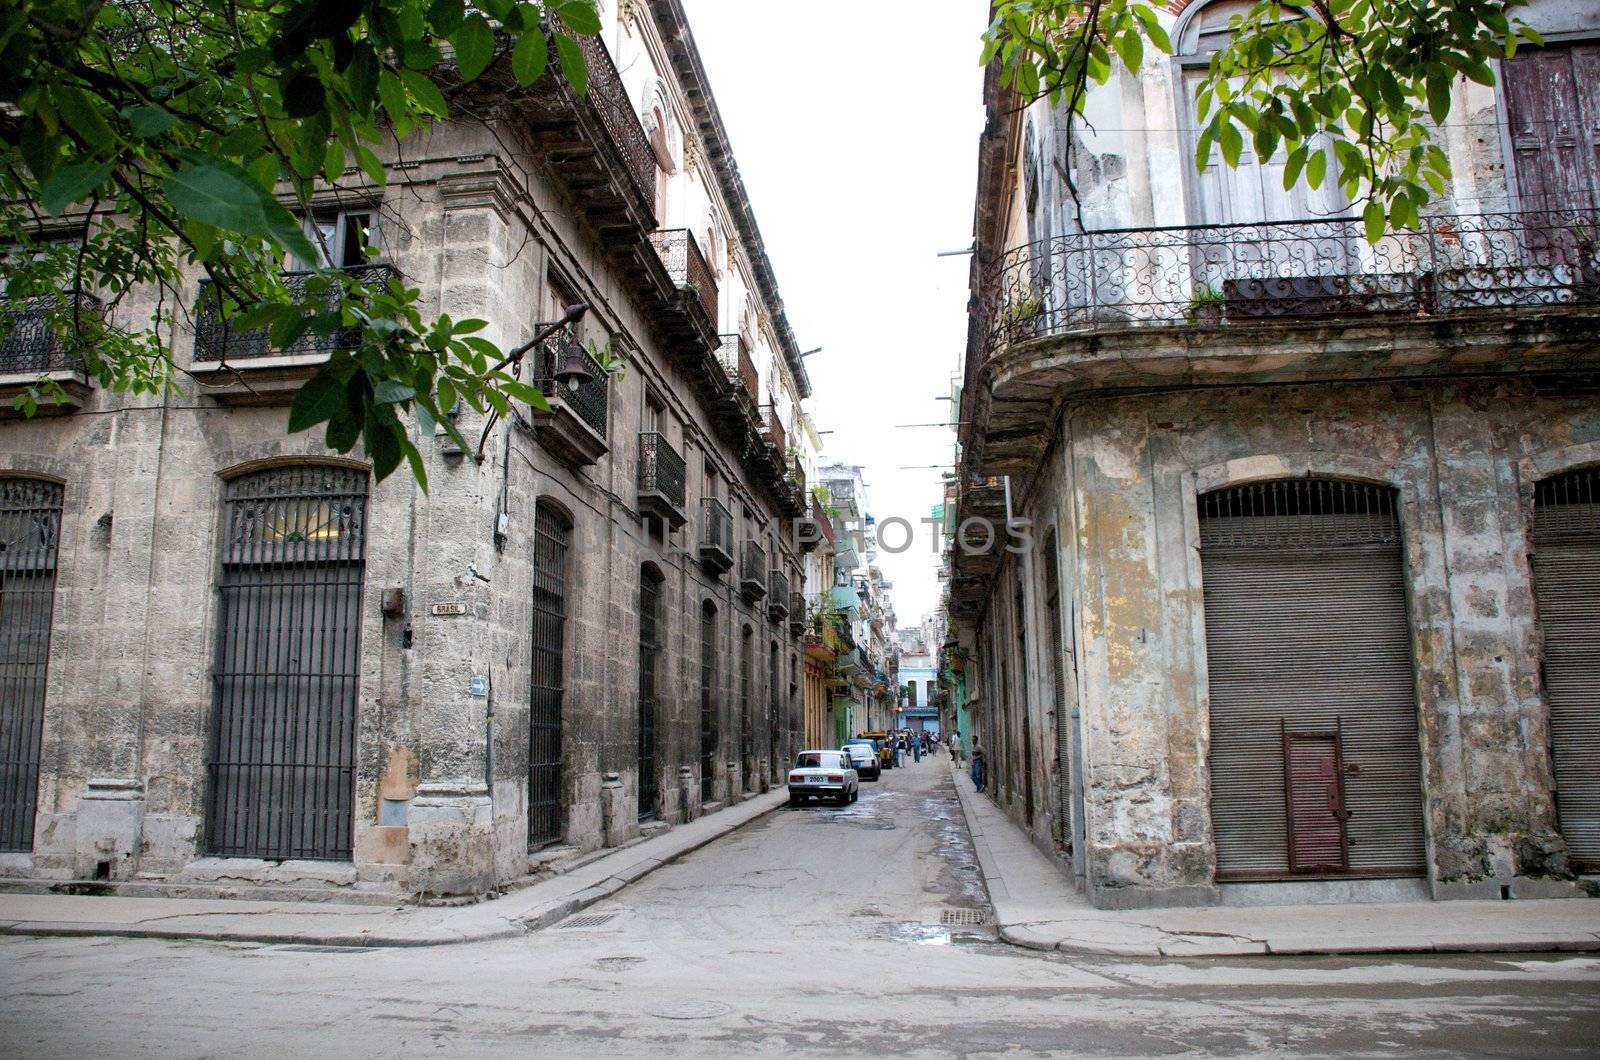 Street scenes of Navana, Cuba